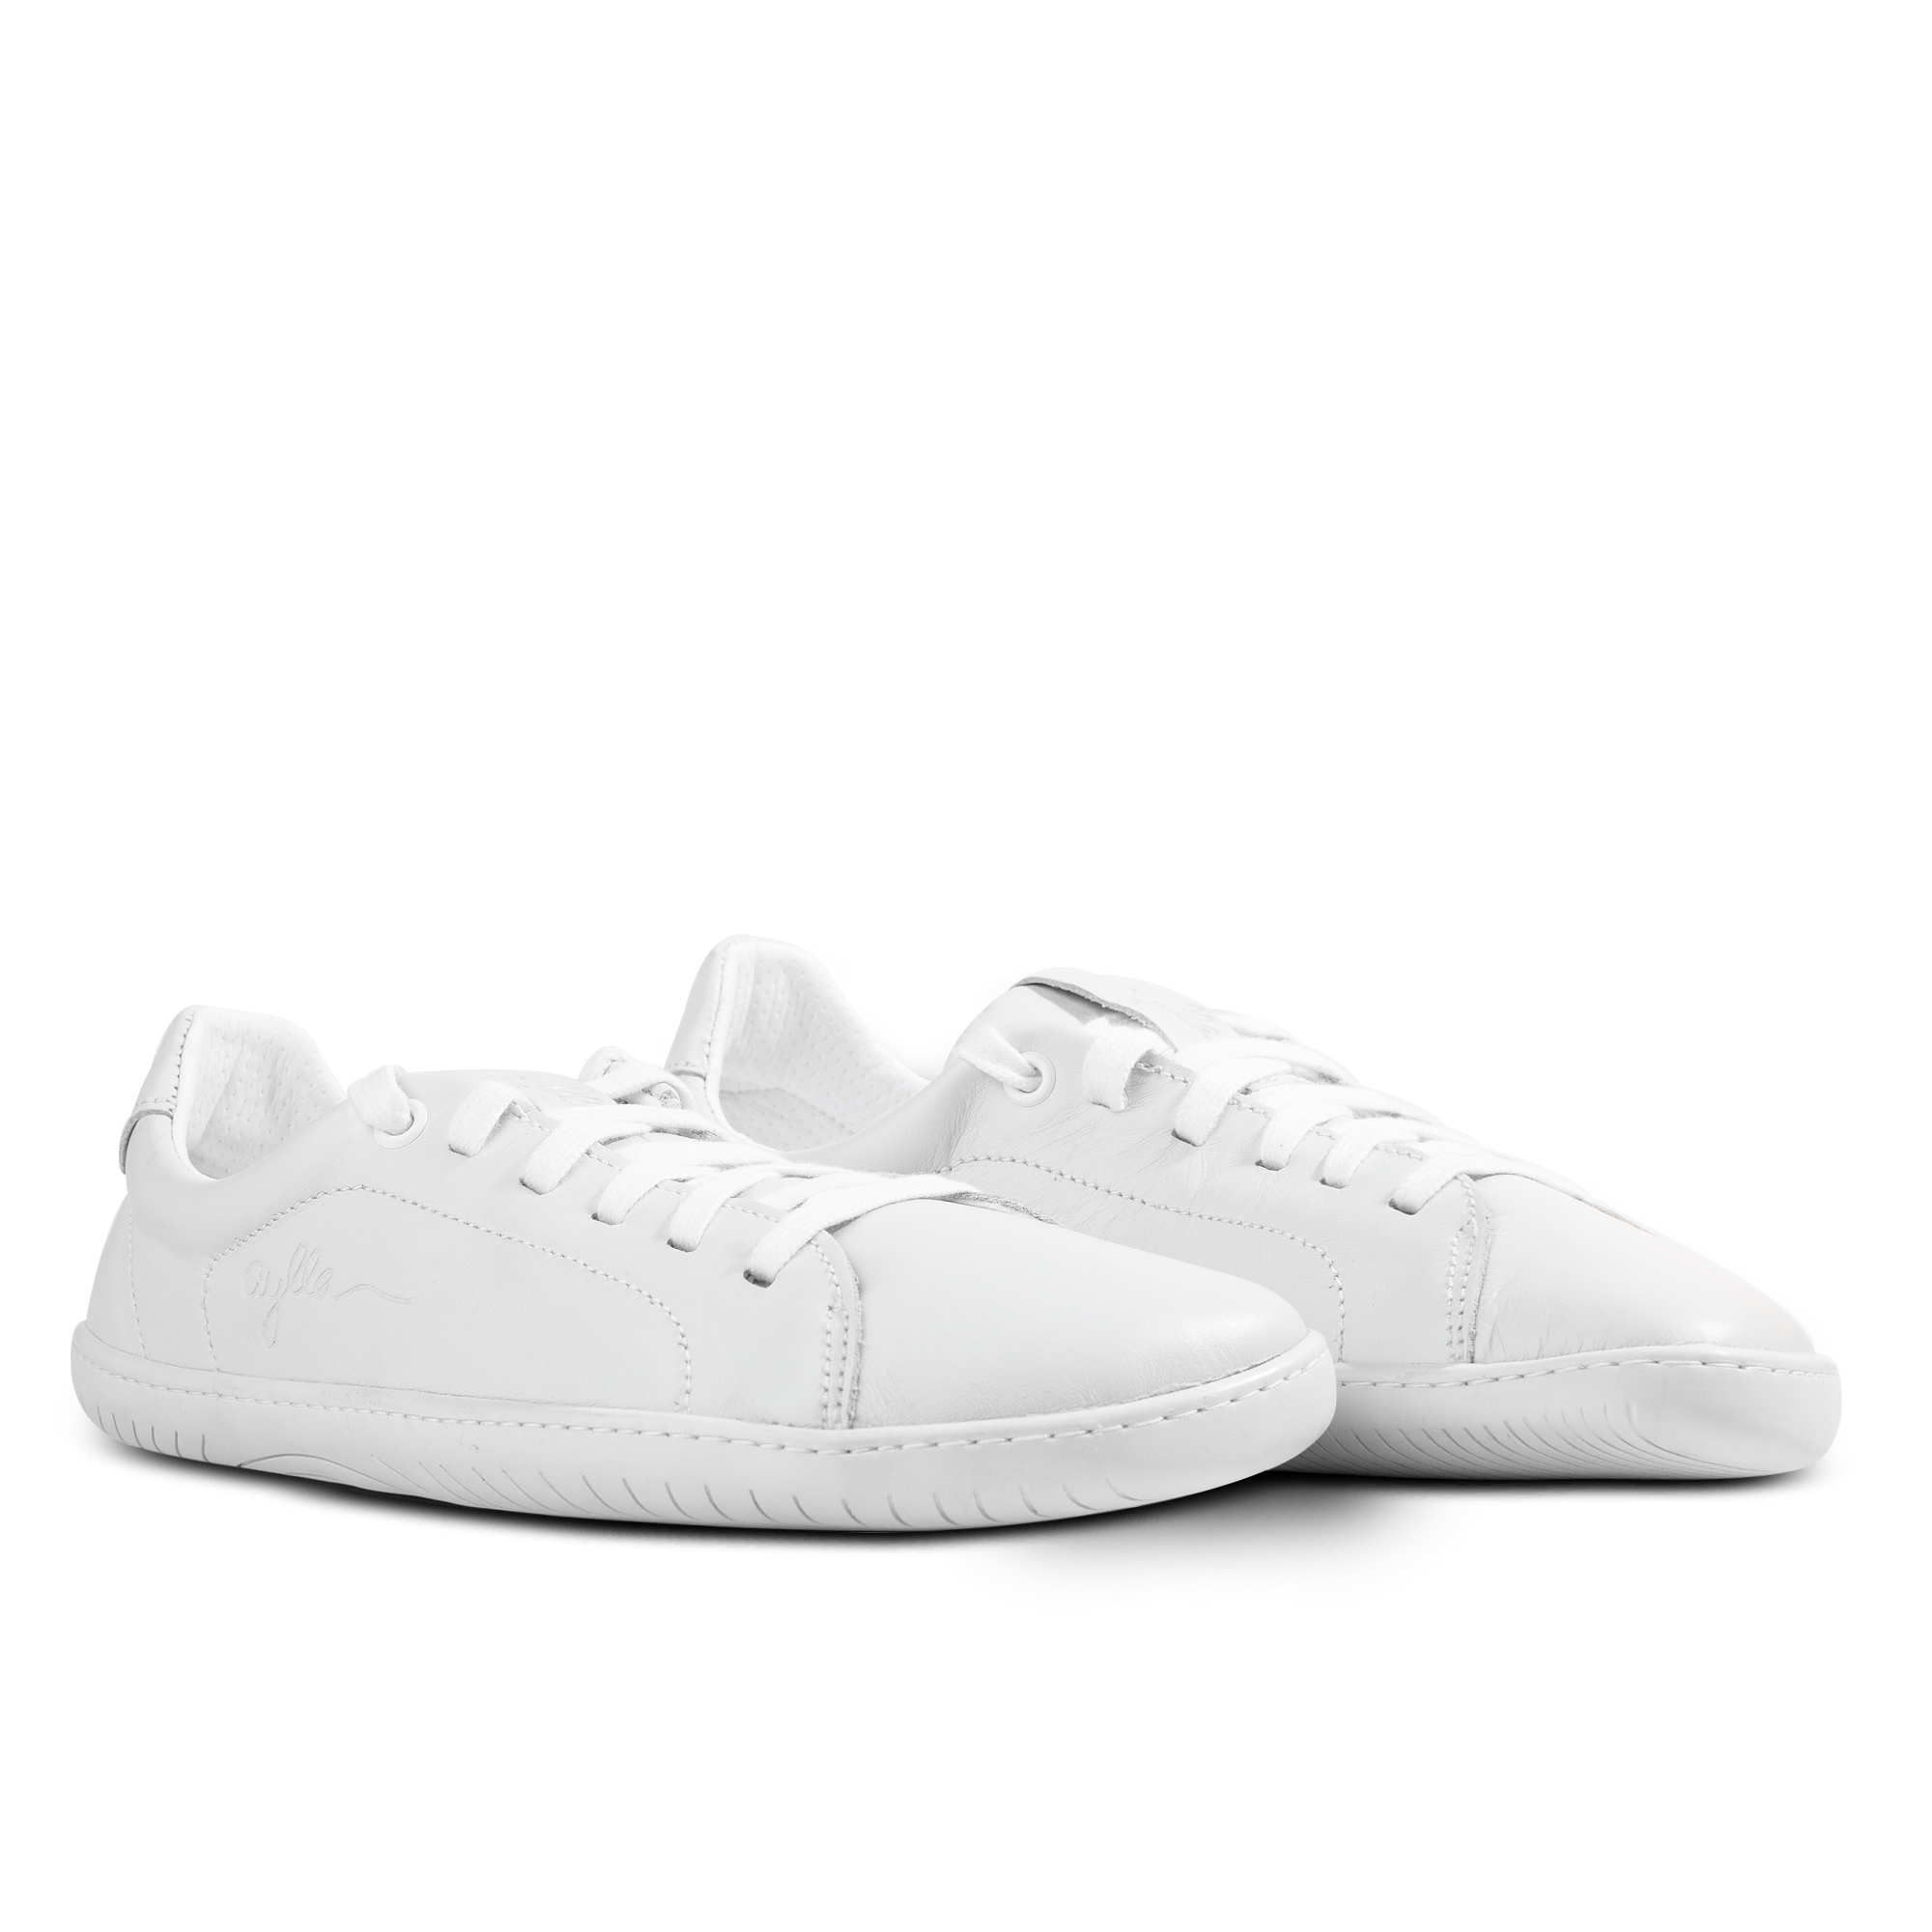 Aylla Keck Womens barfods sneakers i læder til kvinder i farven white / white, par